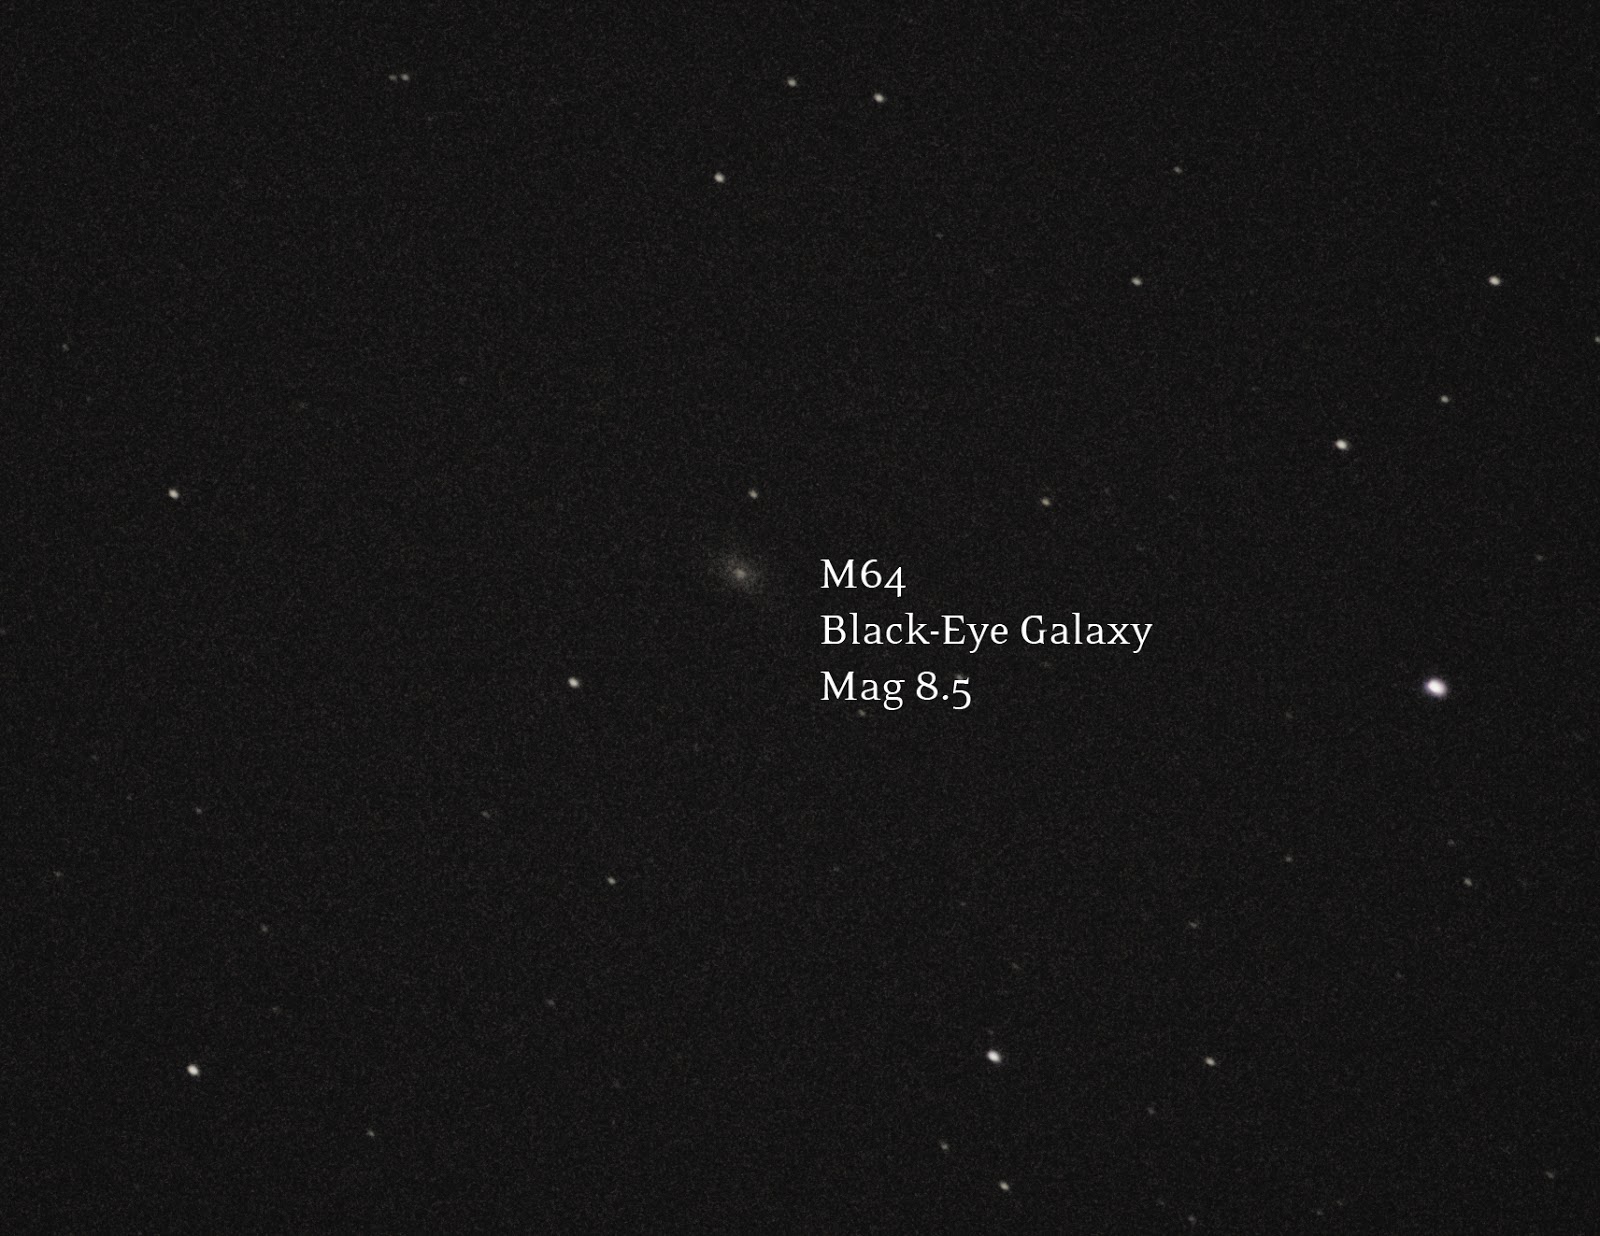 Black-Eye Galaxy M64